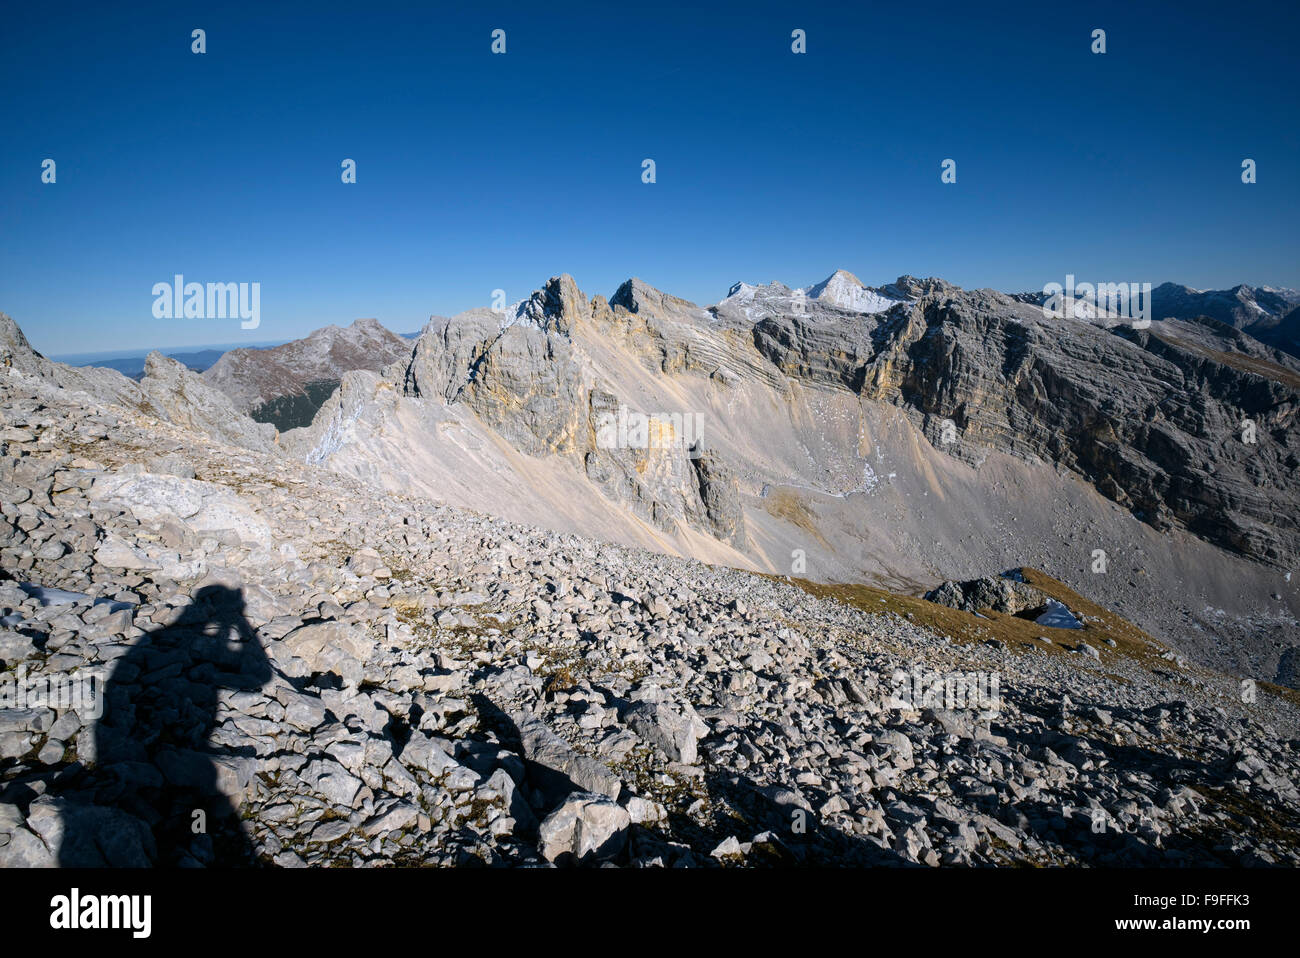 Schatten der Fotograf am Berg Pleisenspitze Aufnahme eines Karwendelgebirge, Tirol, Österreich Stockfoto